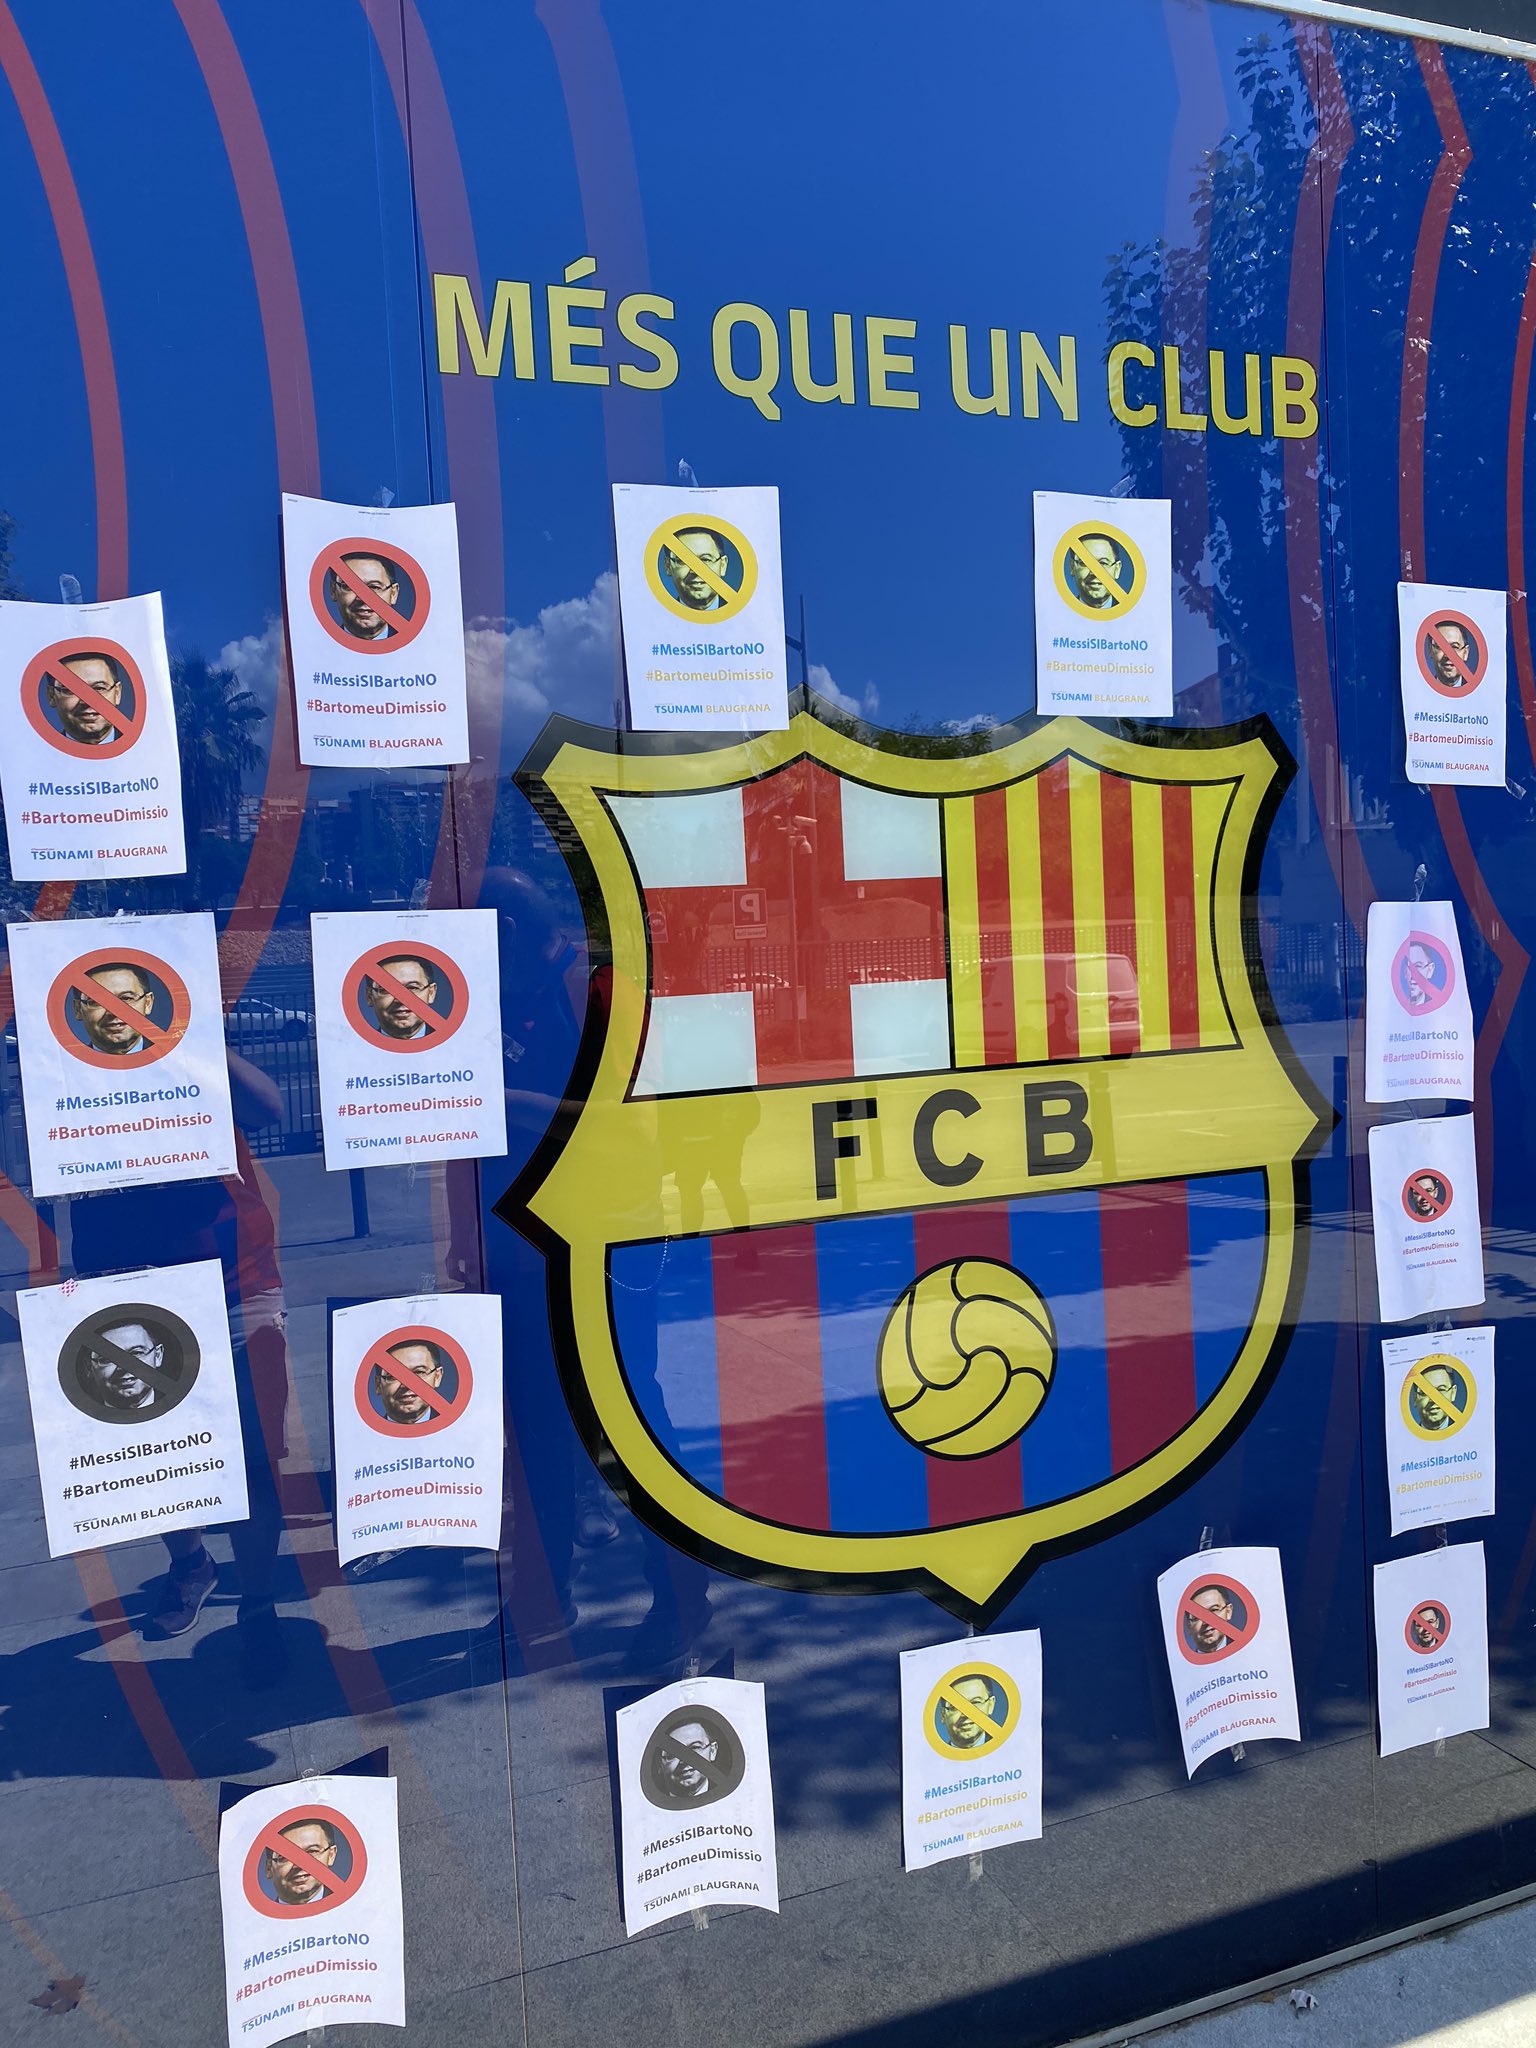 Portades esportives que amplifiquen les crítiques de Messi a Bartomeu